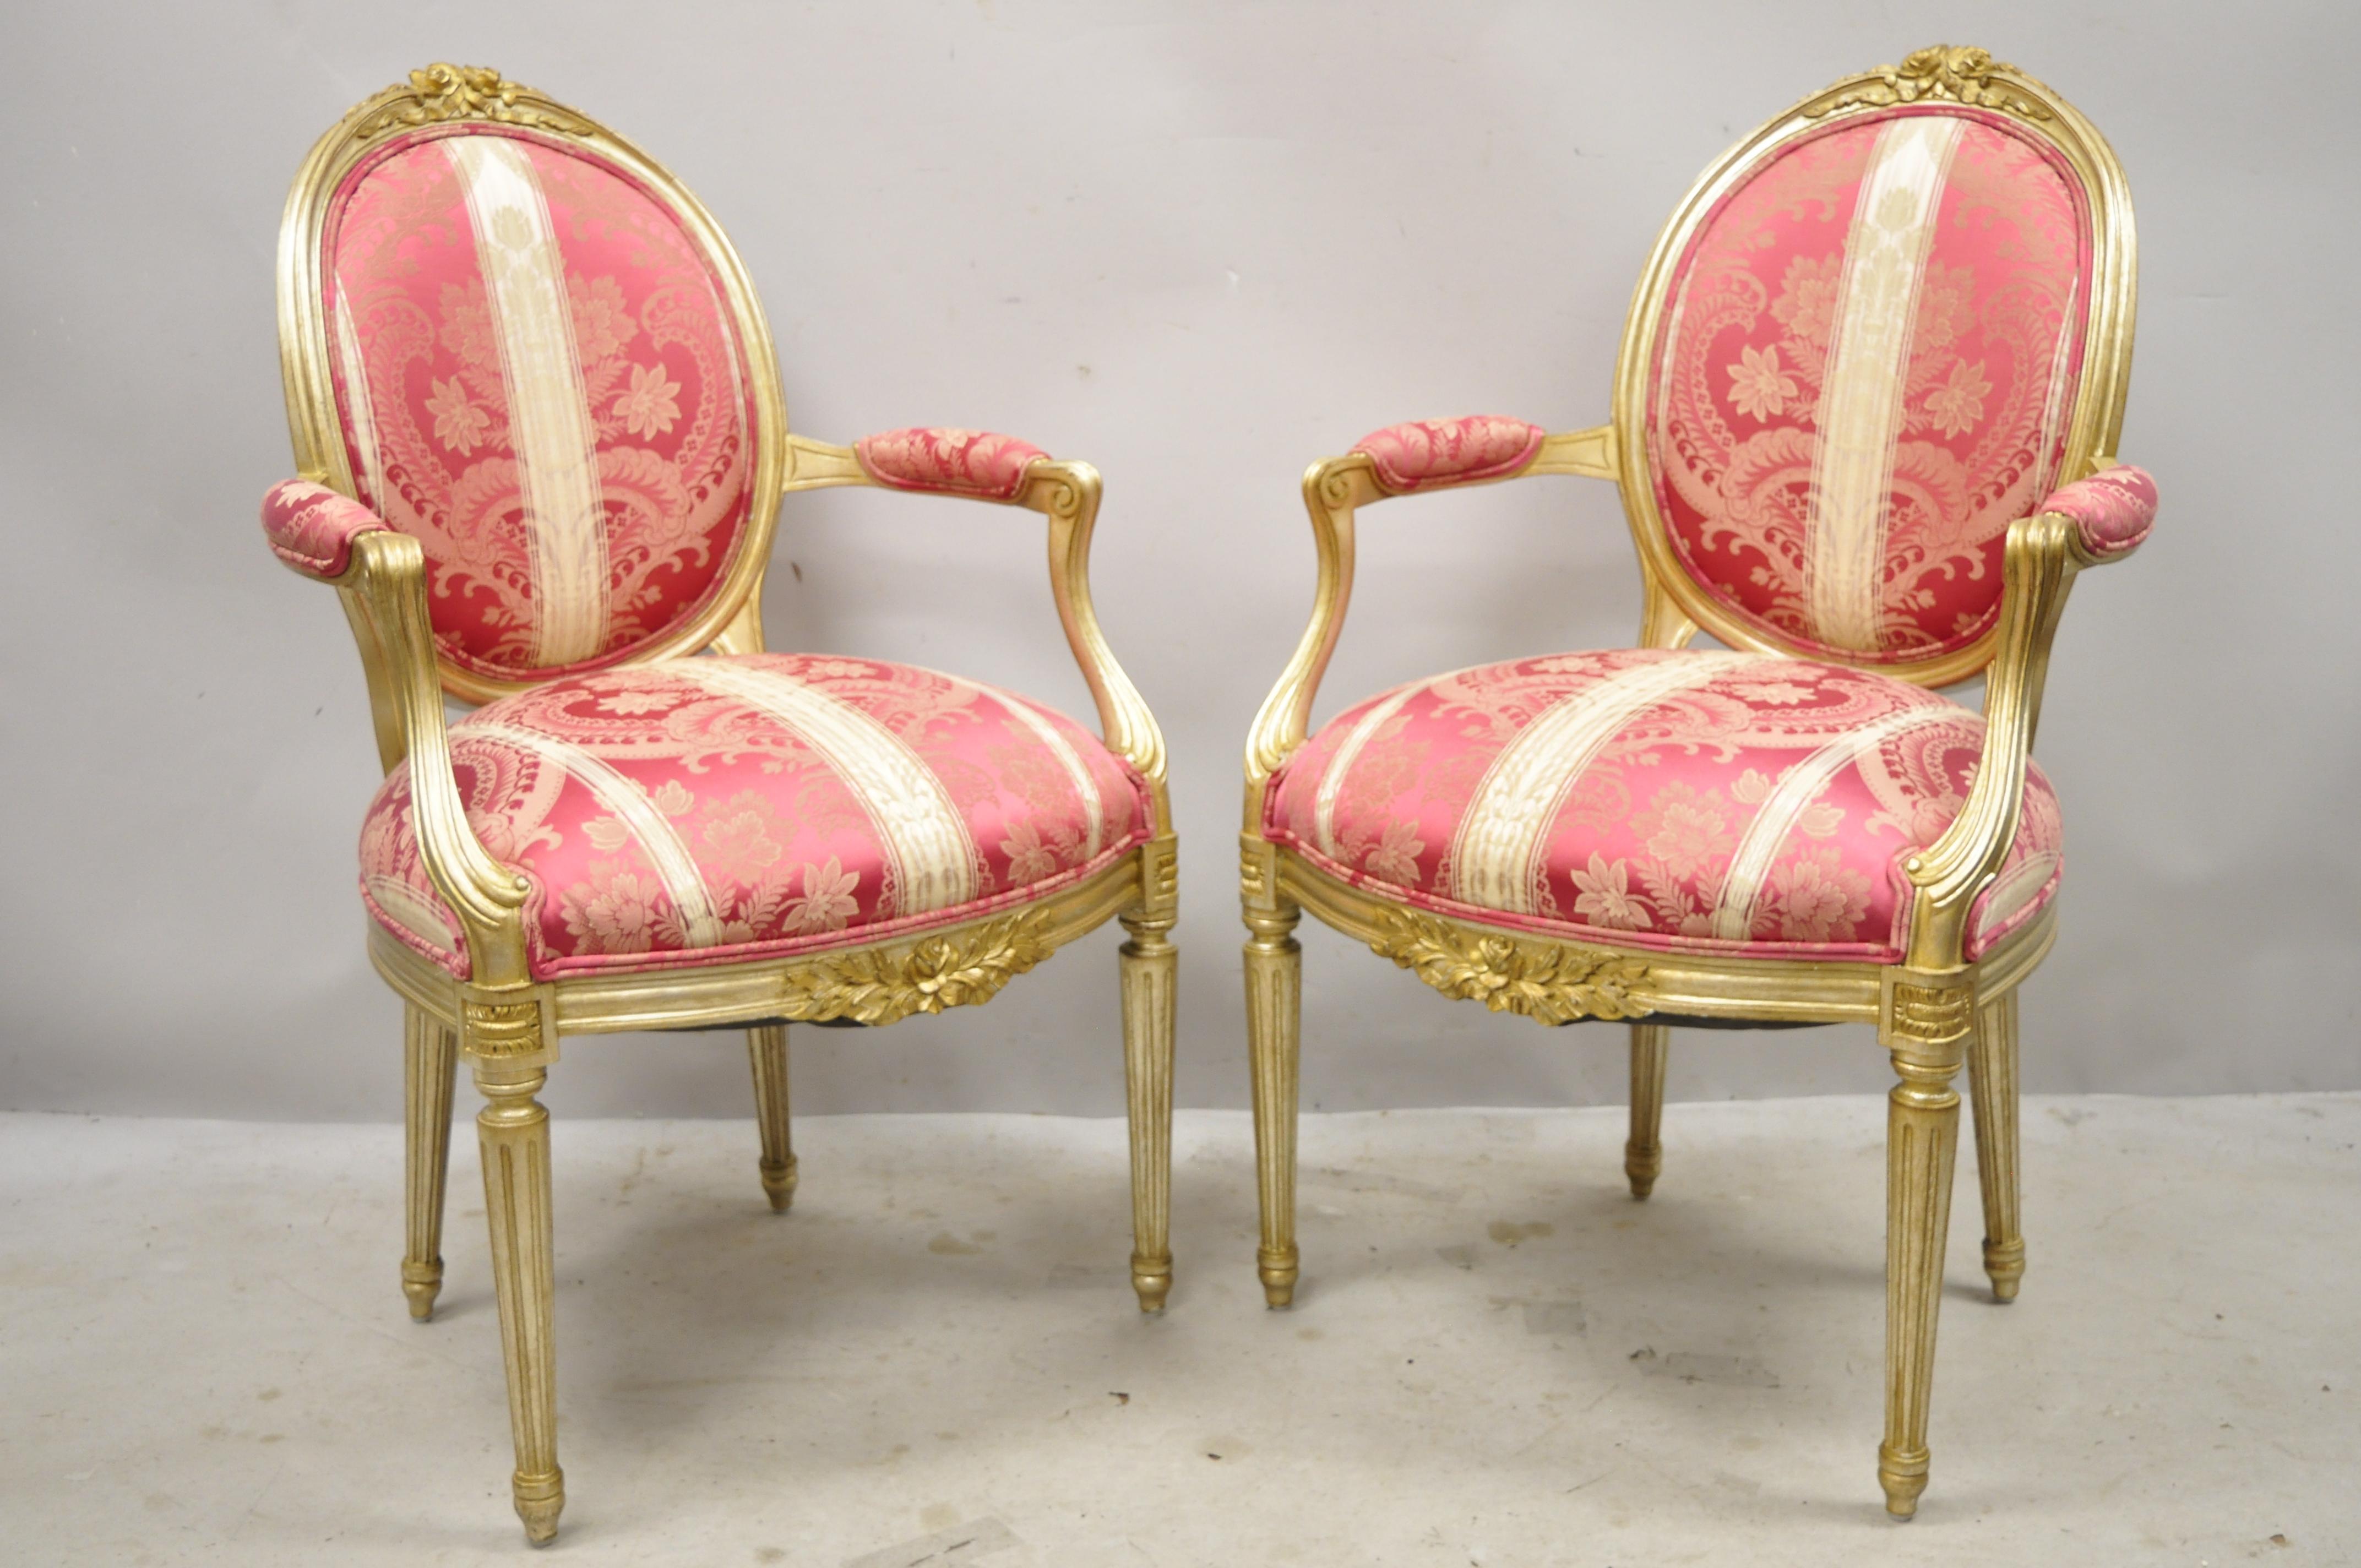 Fauteuils de style Louis XVI en damas rose argenté et doré à dos médaillon ovale - une paire. ***La liste est pour (1) paire. Actuellement (3) paires disponibles*** Cet article se caractérise par une finition argentée et dorée, des dossiers arrière